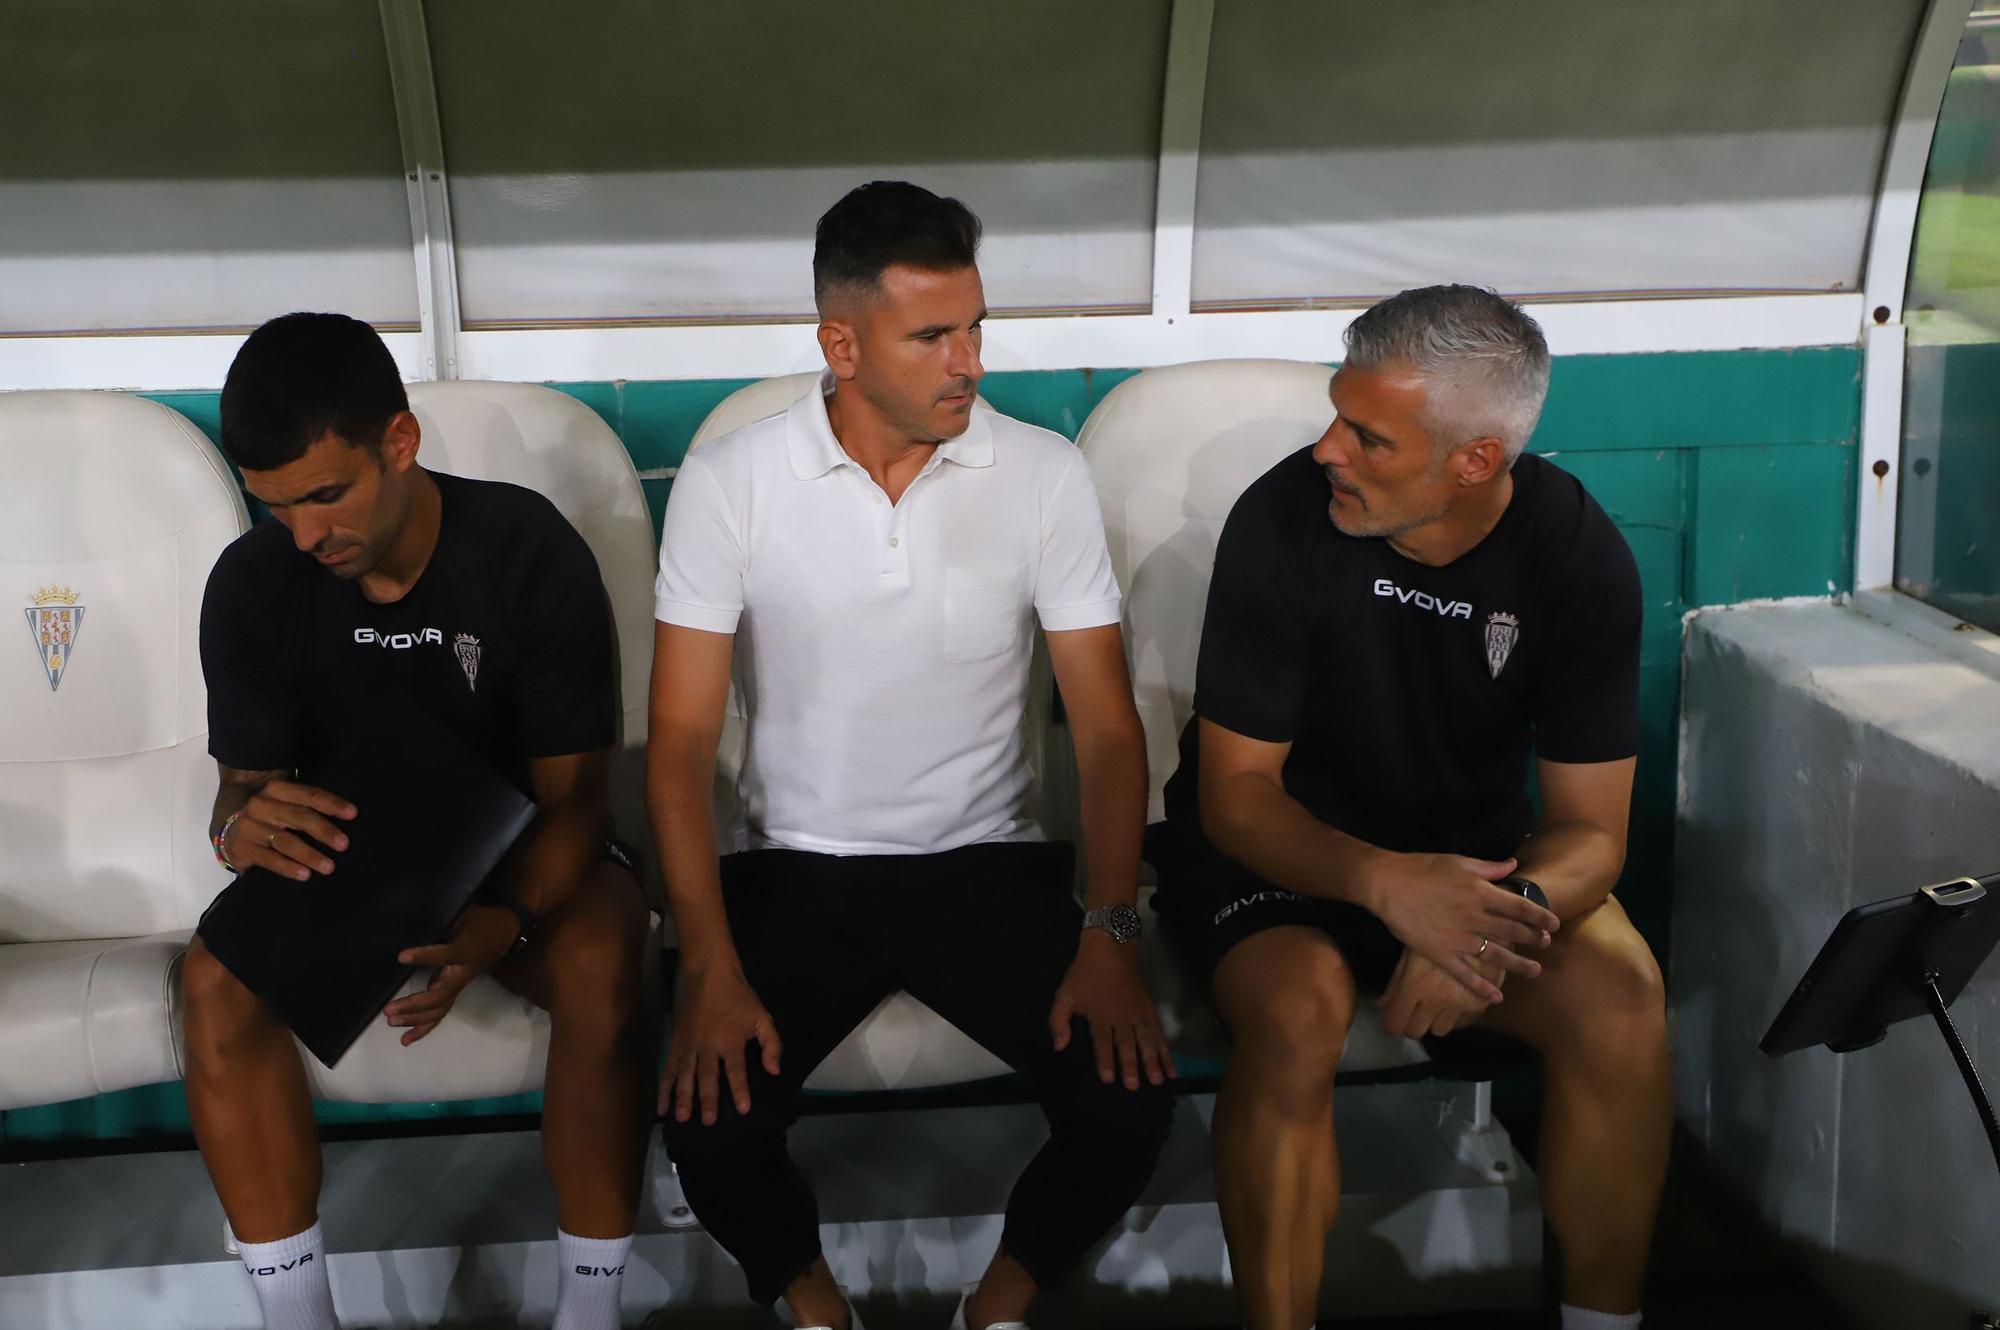 Córdoba CF - Ibiza : las imágenes del partido en El Arcángel